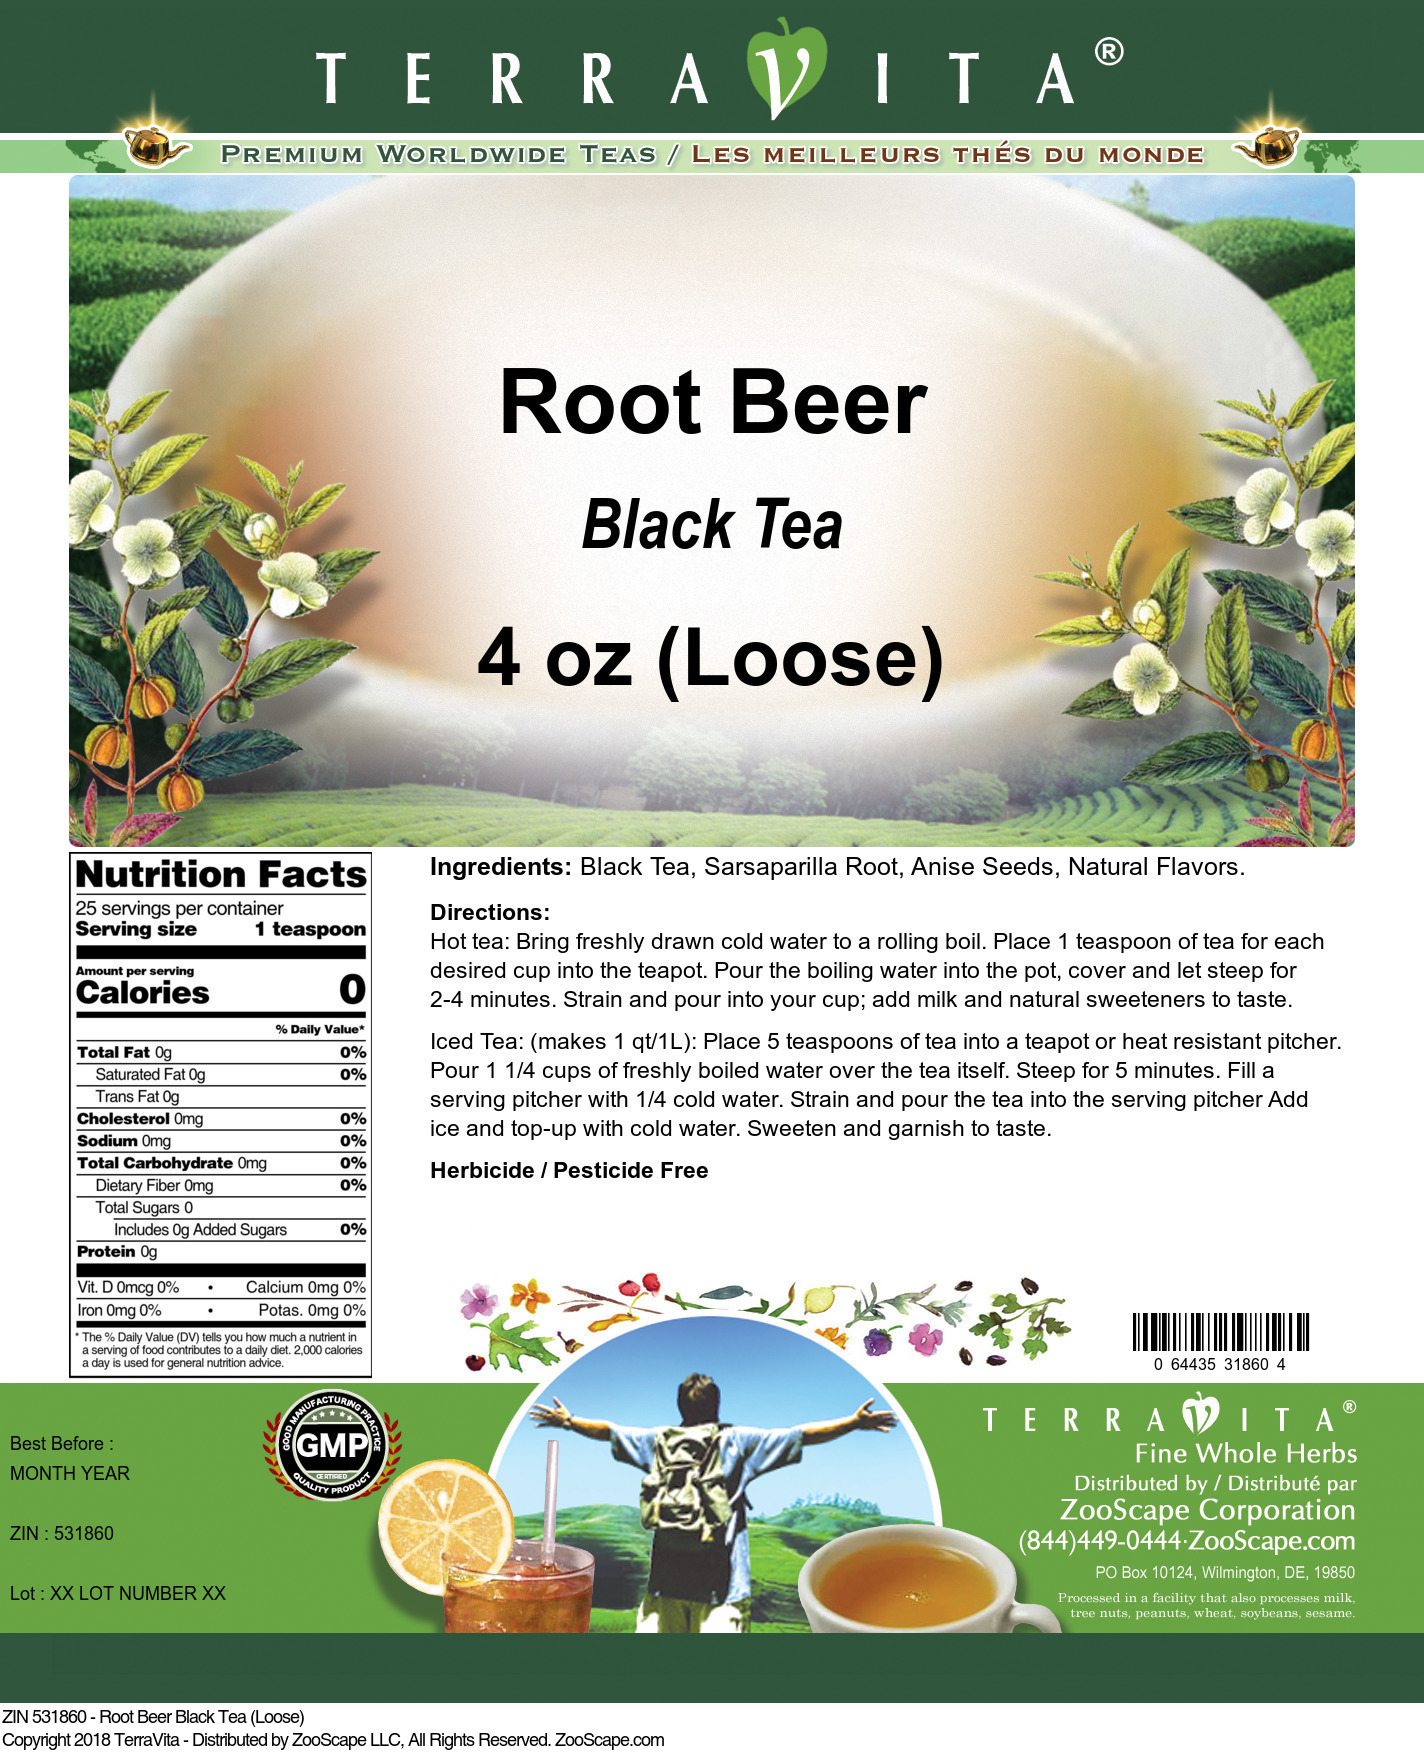 Root Beer Black Tea (Loose) - Label